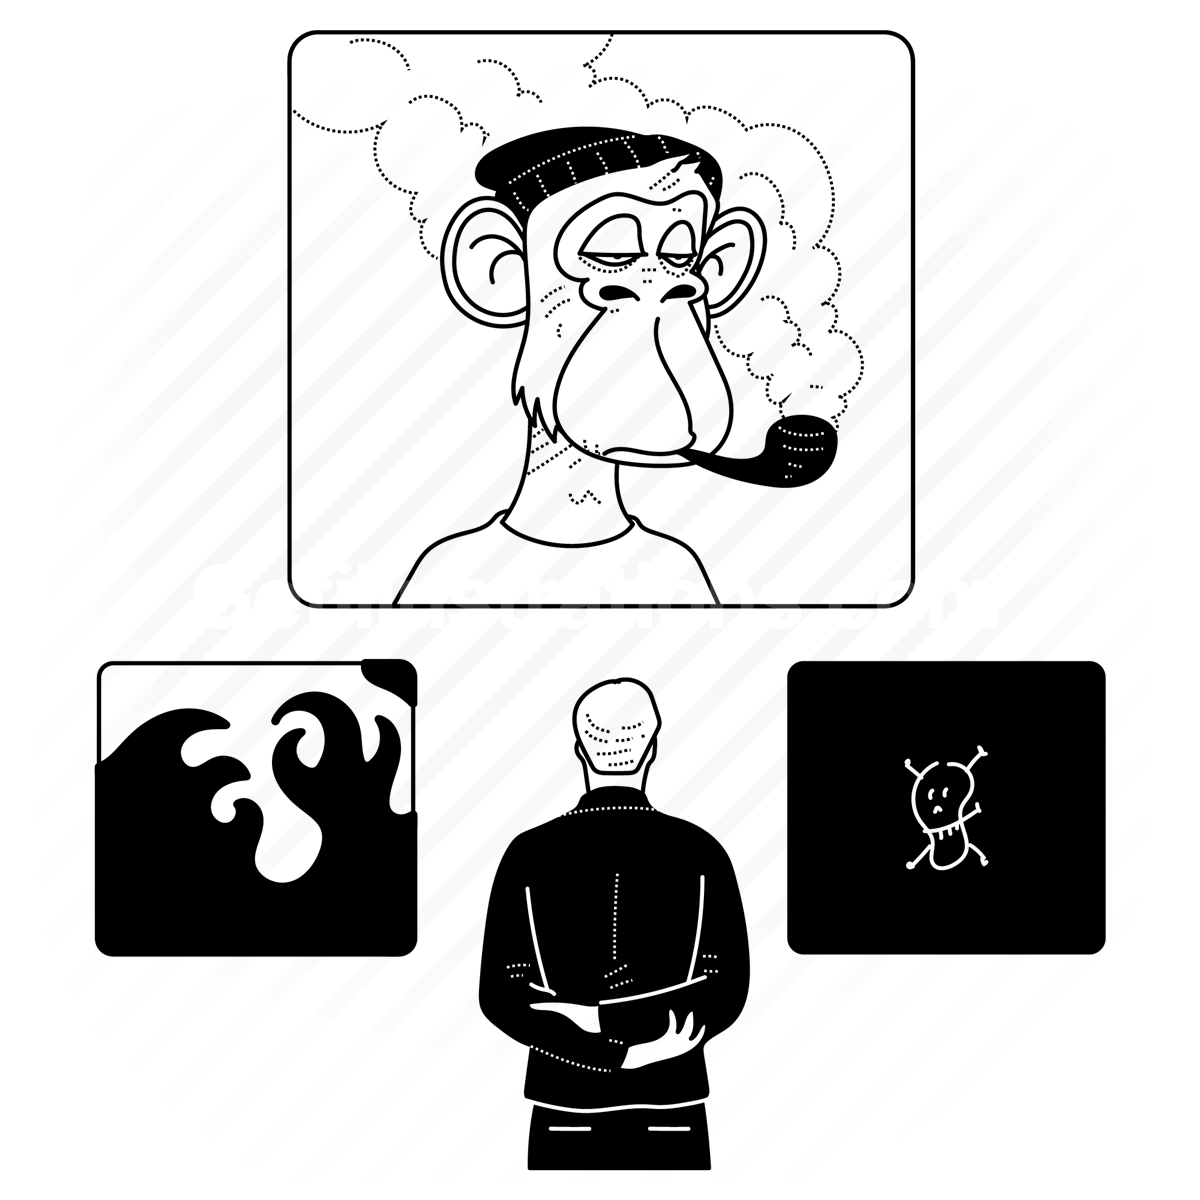 picture, photo, image, nft, bored monkey, bayc, monkey, ape, blockchain